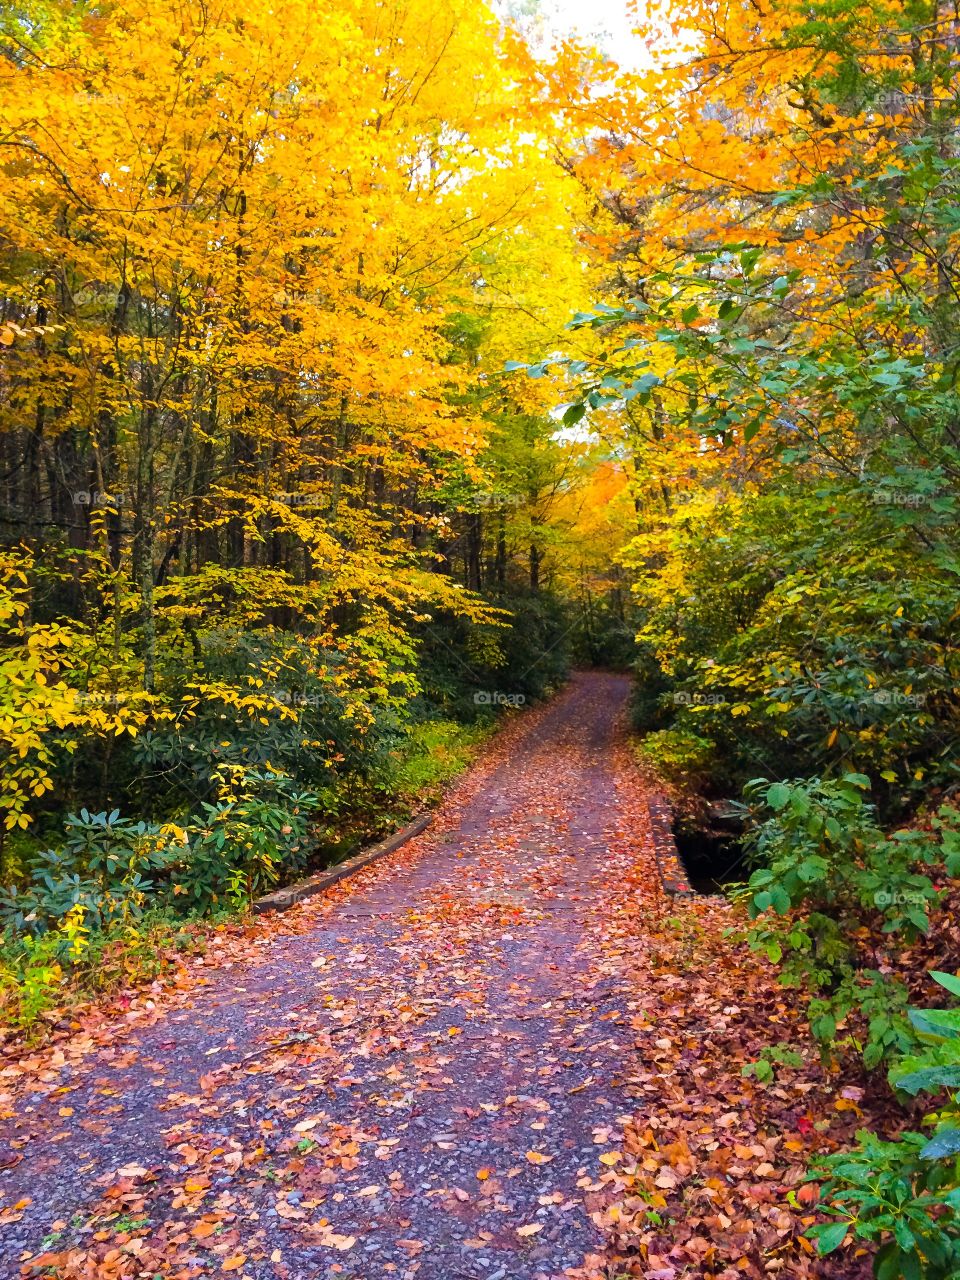 Walkway through autumn trees